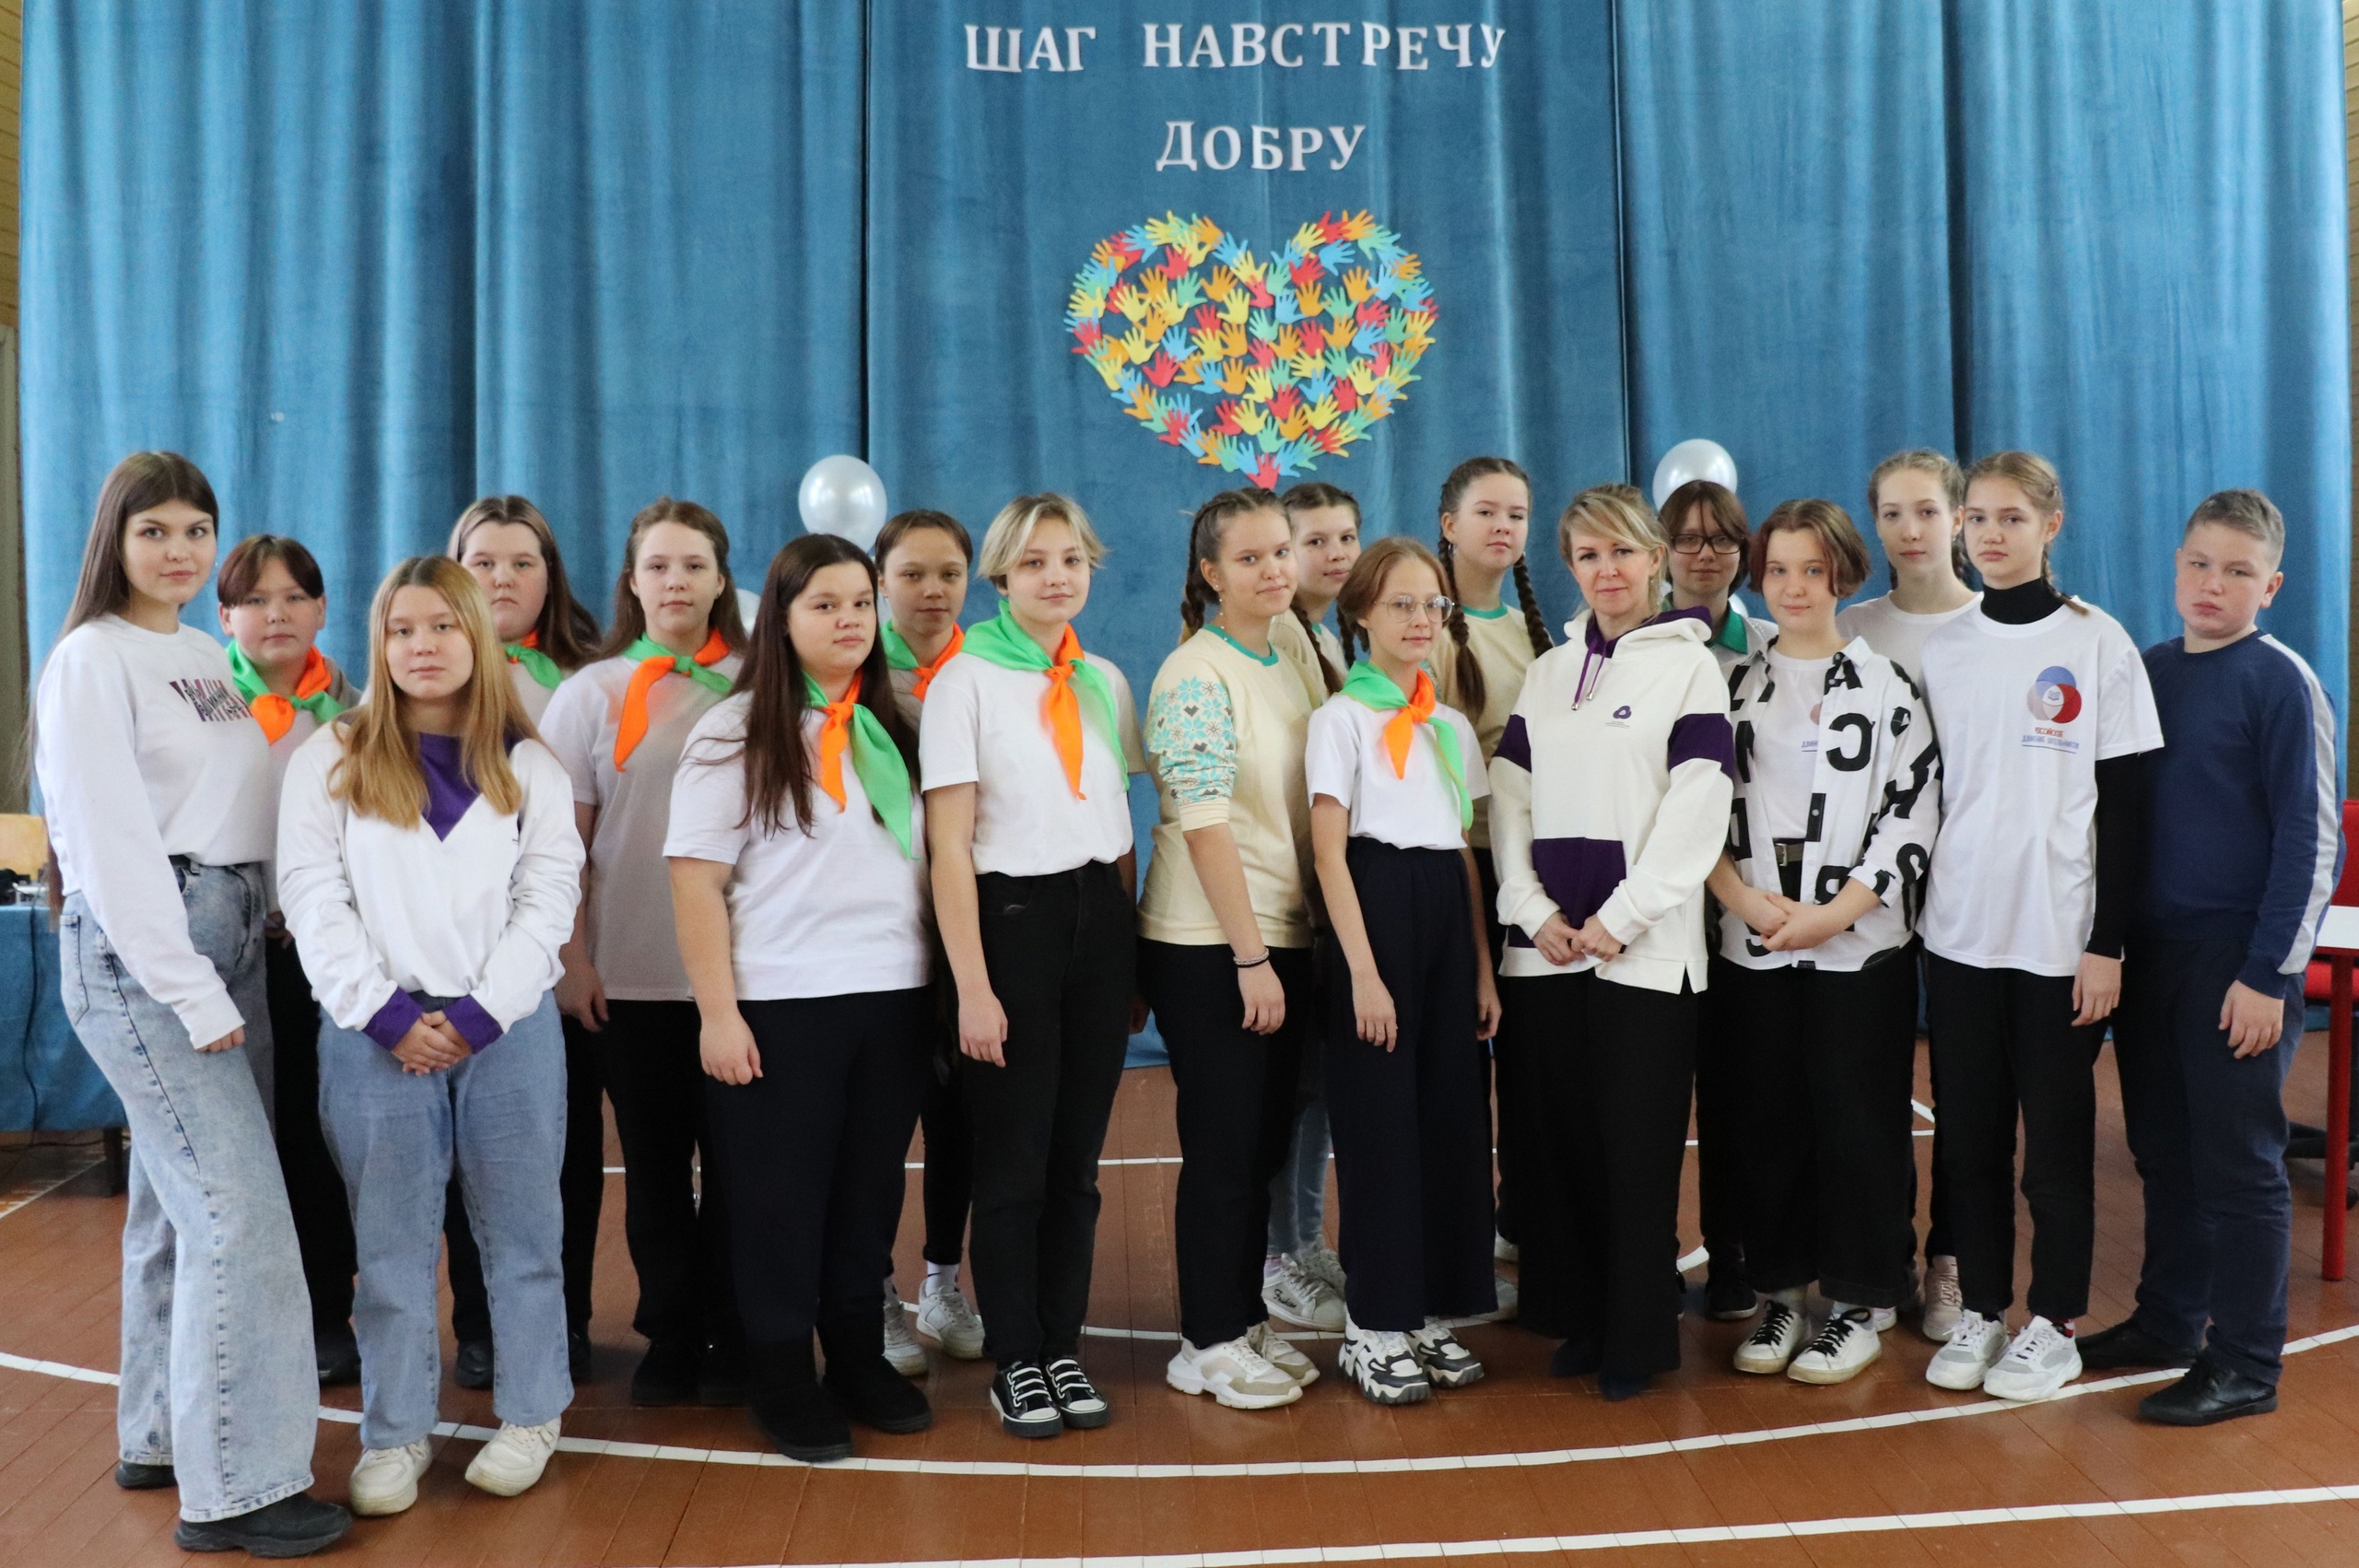 5 декабря — День добровольца (волонтера) в России.